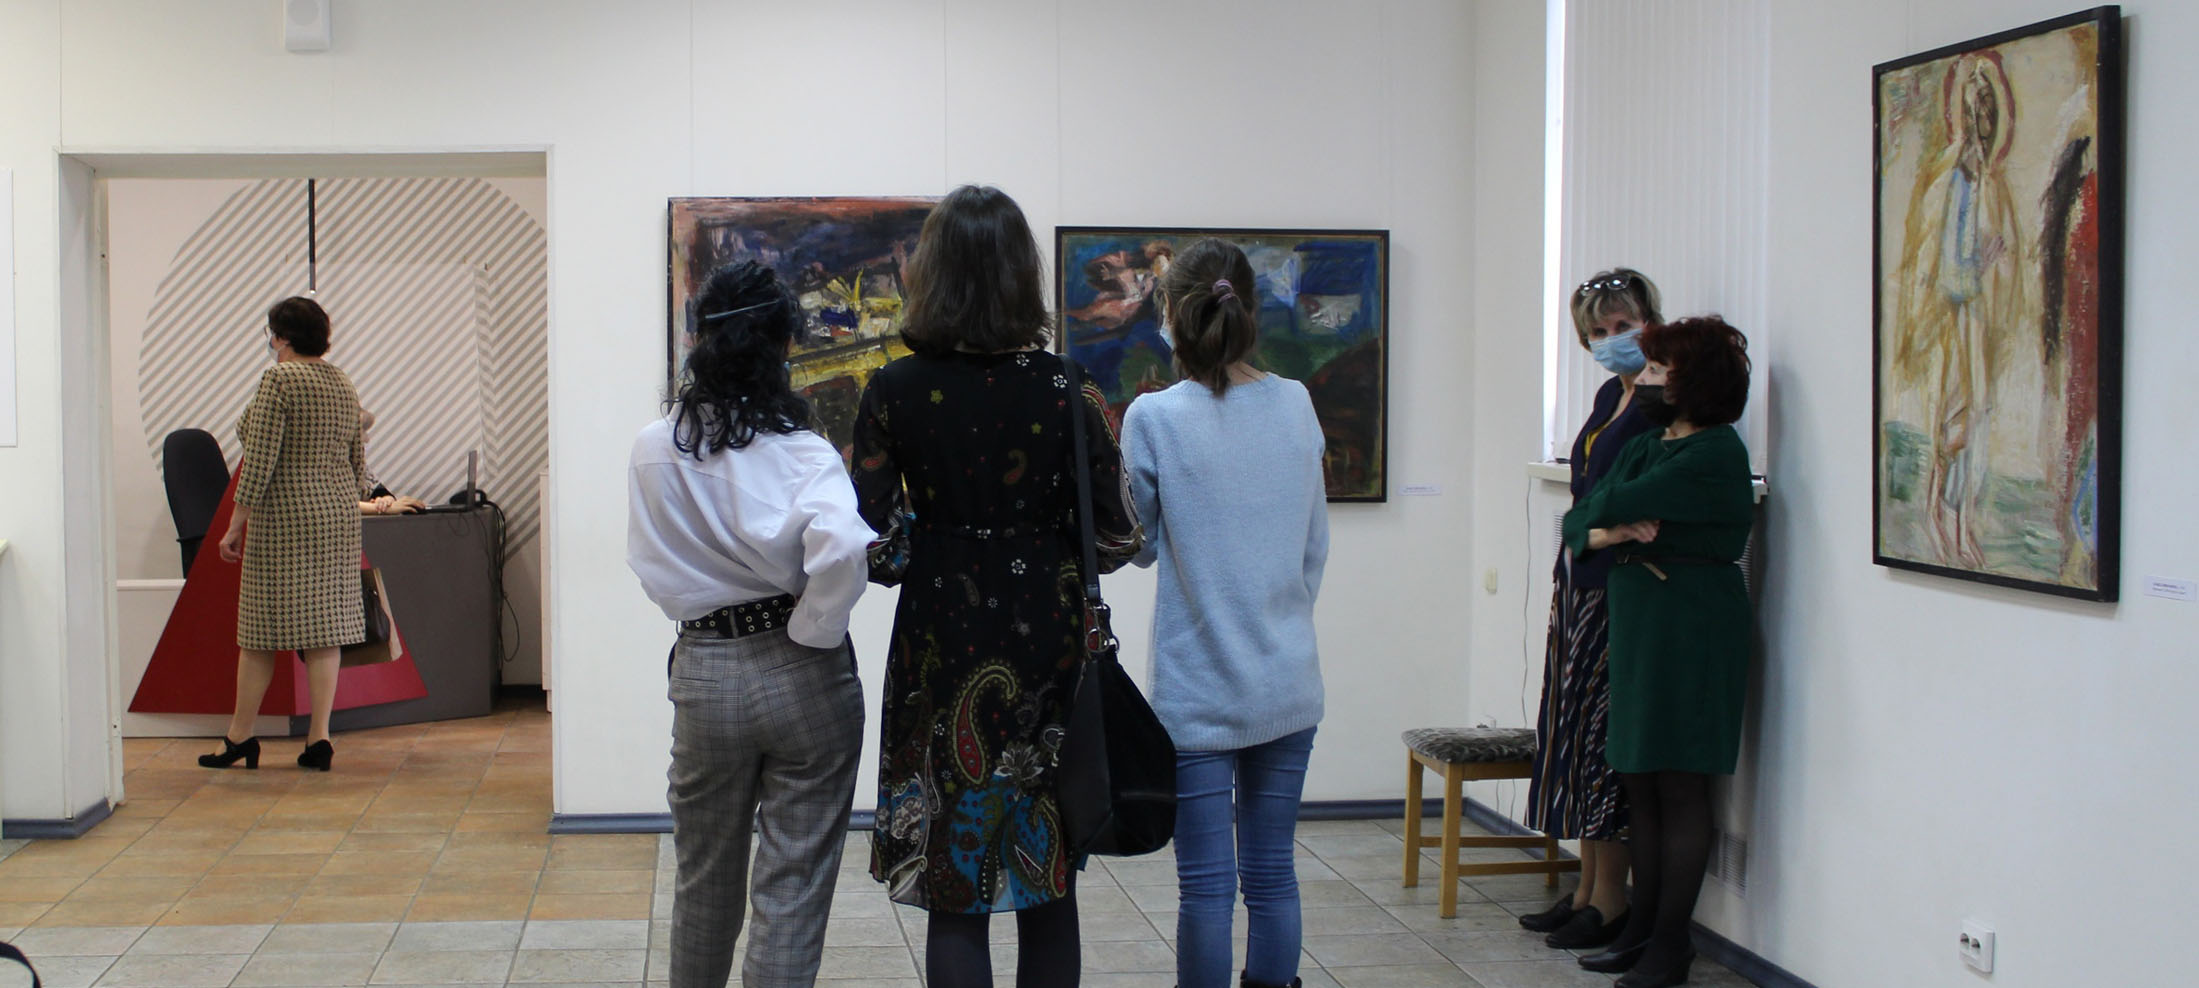 Инвалидам и многодетным семьям бесплатно покажут выставку известного художника в Петрозаводске